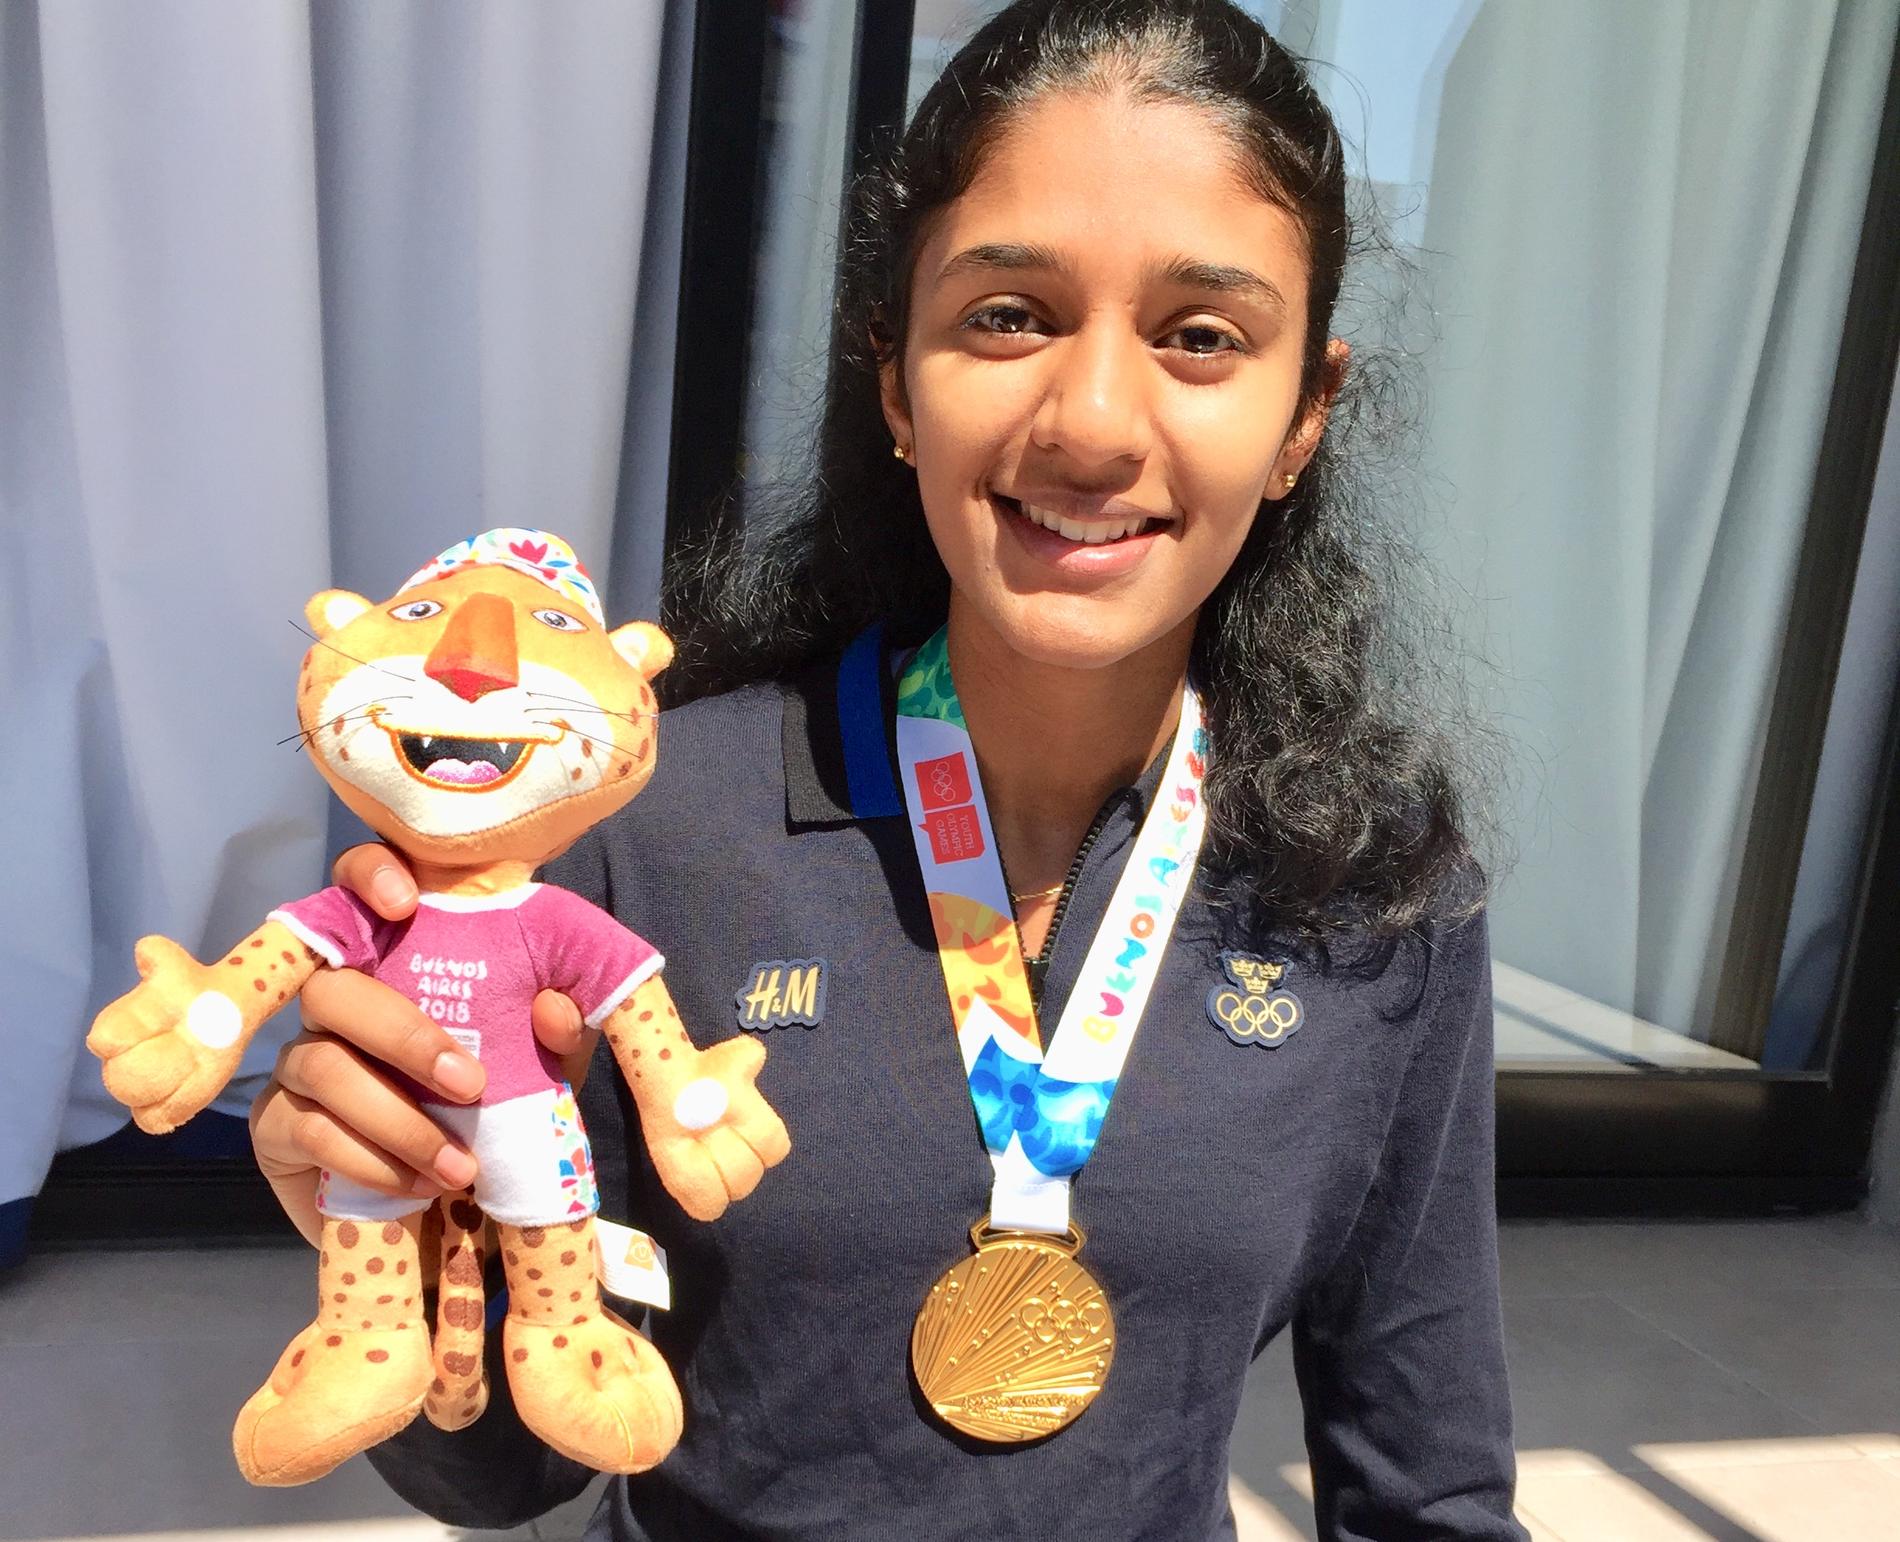 Ashwathi Pillais OS:medalj har stulits vid ett inbrott, nu vädjar hon om hjälp.